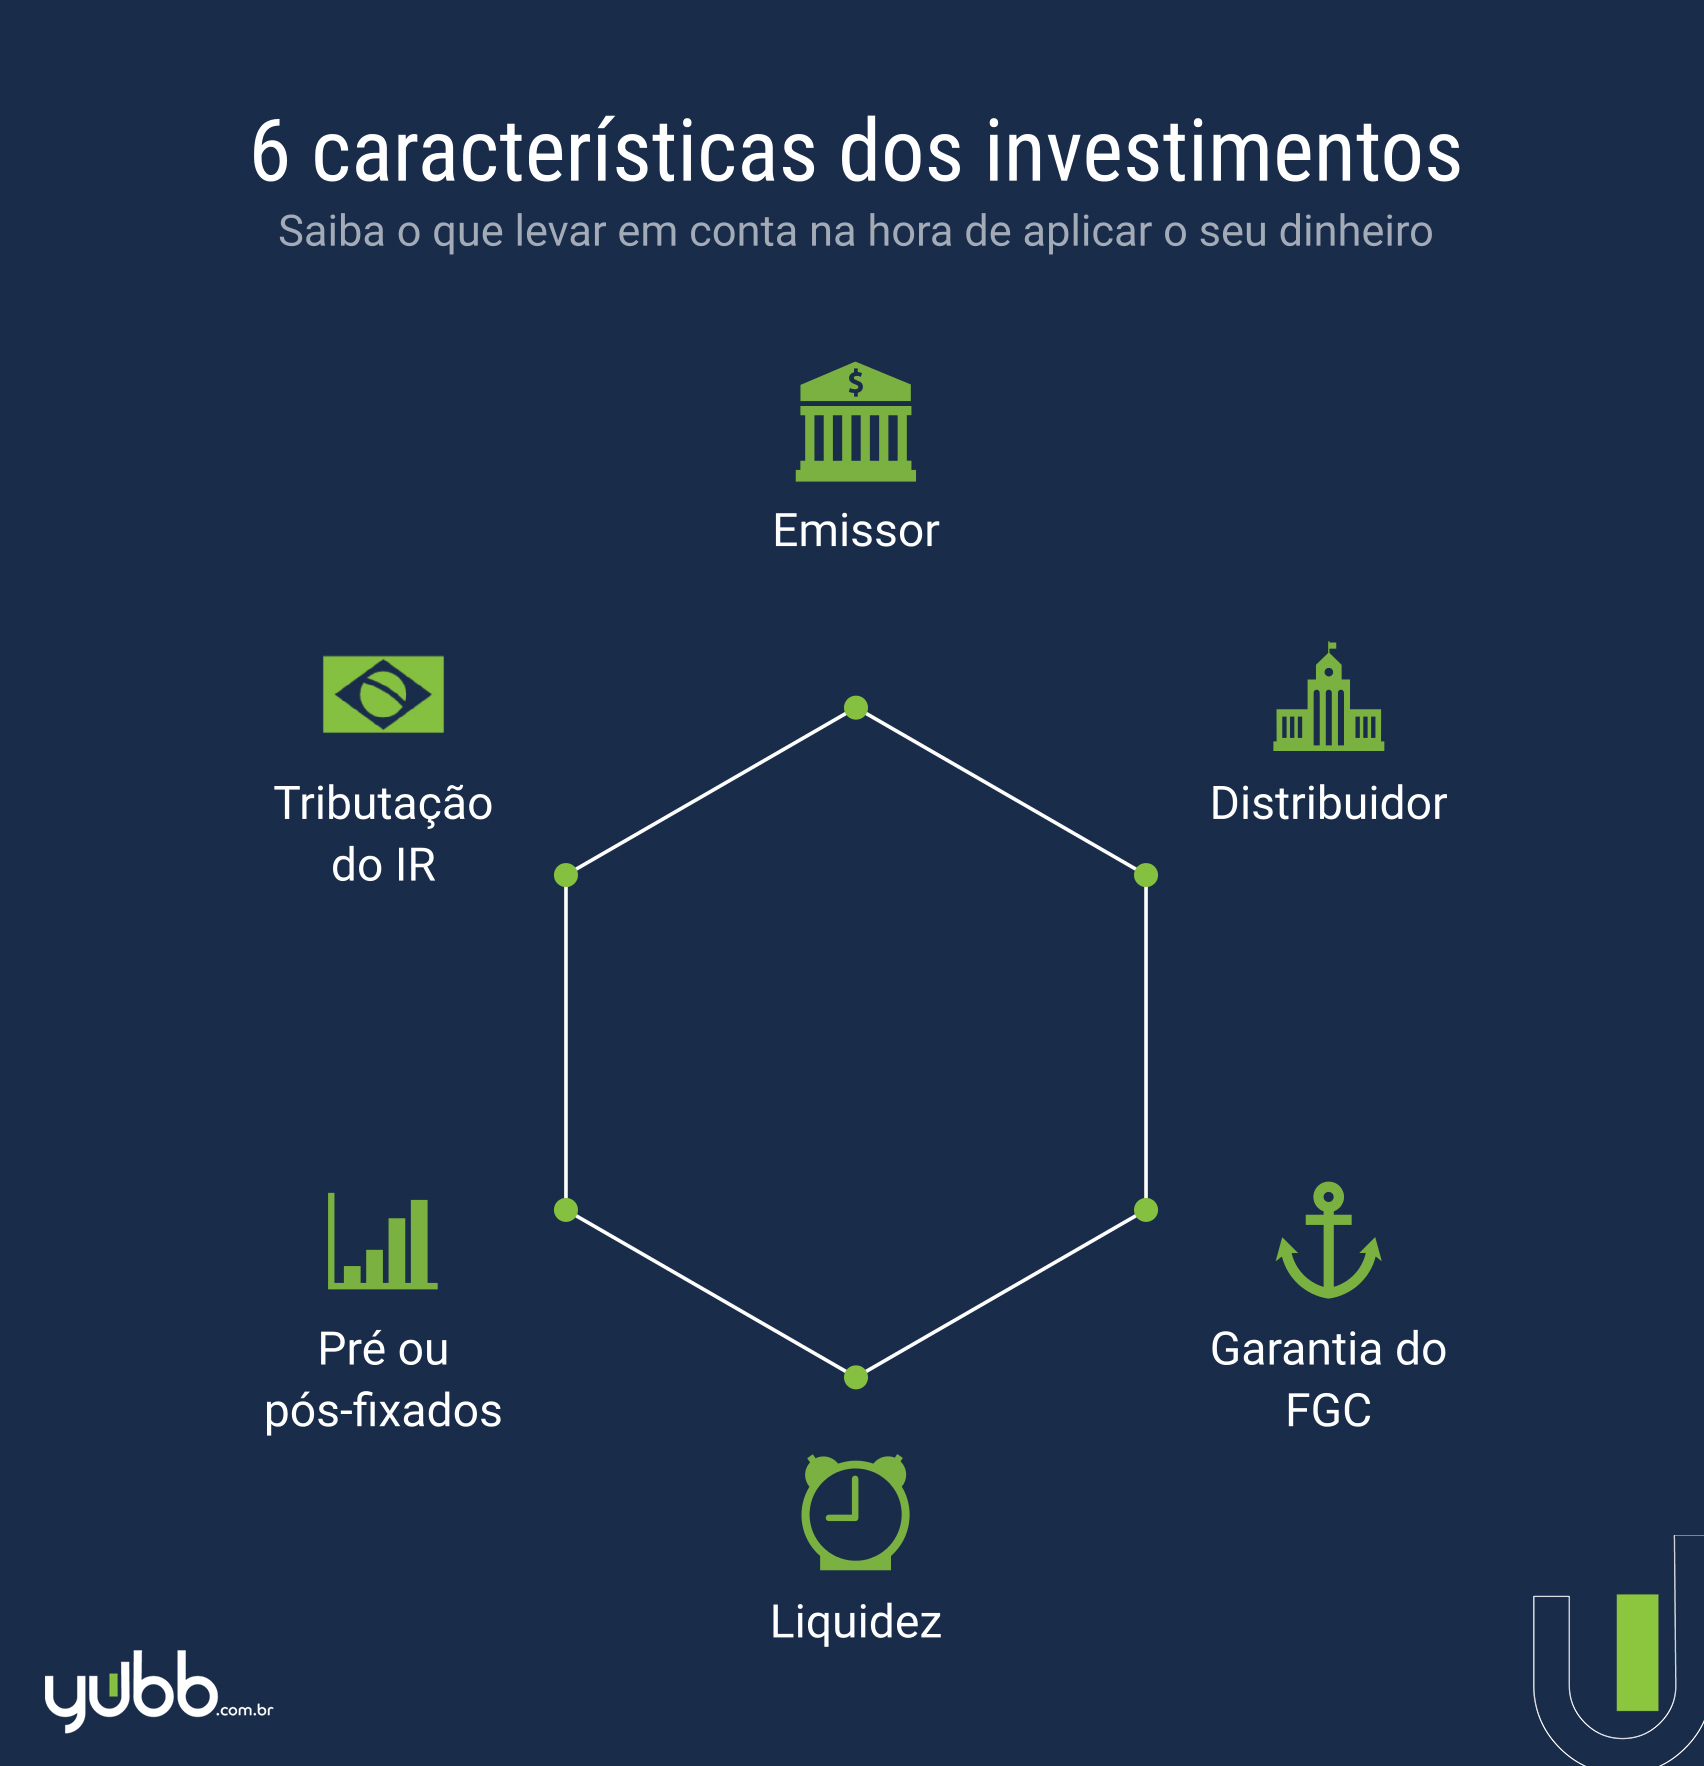 [INFOGRÁFICO] Características dos investimentos - Yubb para Órama.jpg